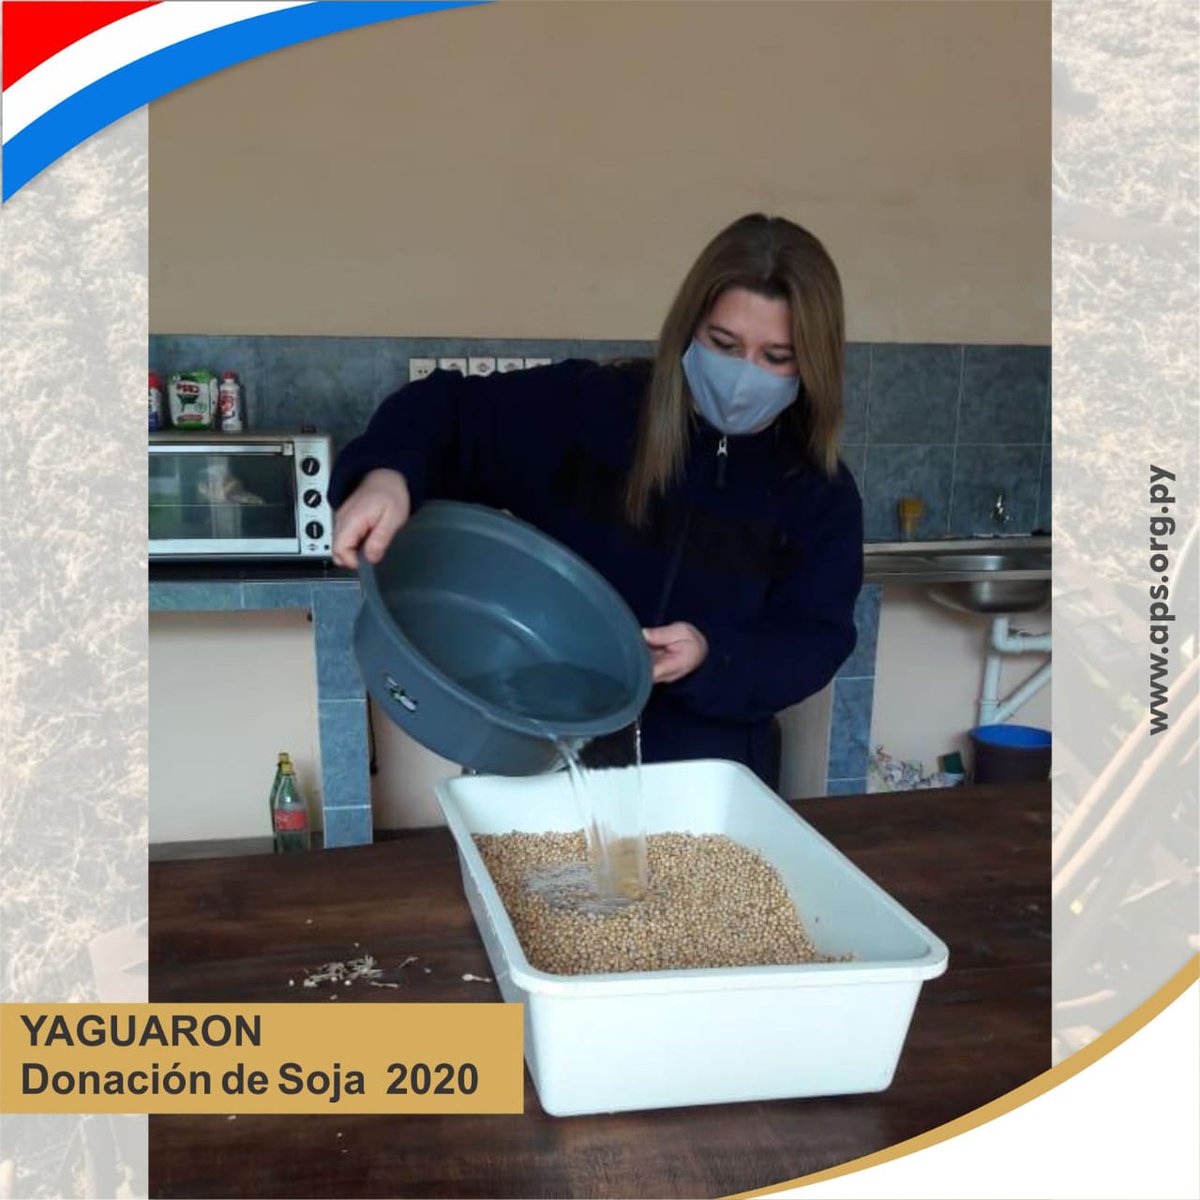 #Yaguaron
Productores socios de APS donaron granos de soja para la producción de leche de soja para familias de diferentes puntos del país 

📸 las fotos son gentileza de Arturo Garcete

#FuerzaParaguay  🇵🇾 #DonaciónDeAlimentos #DonaciónSoja #ElCampoNoPara 👩🏻‍🌾🌱💪🏼👨🏻‍🌾